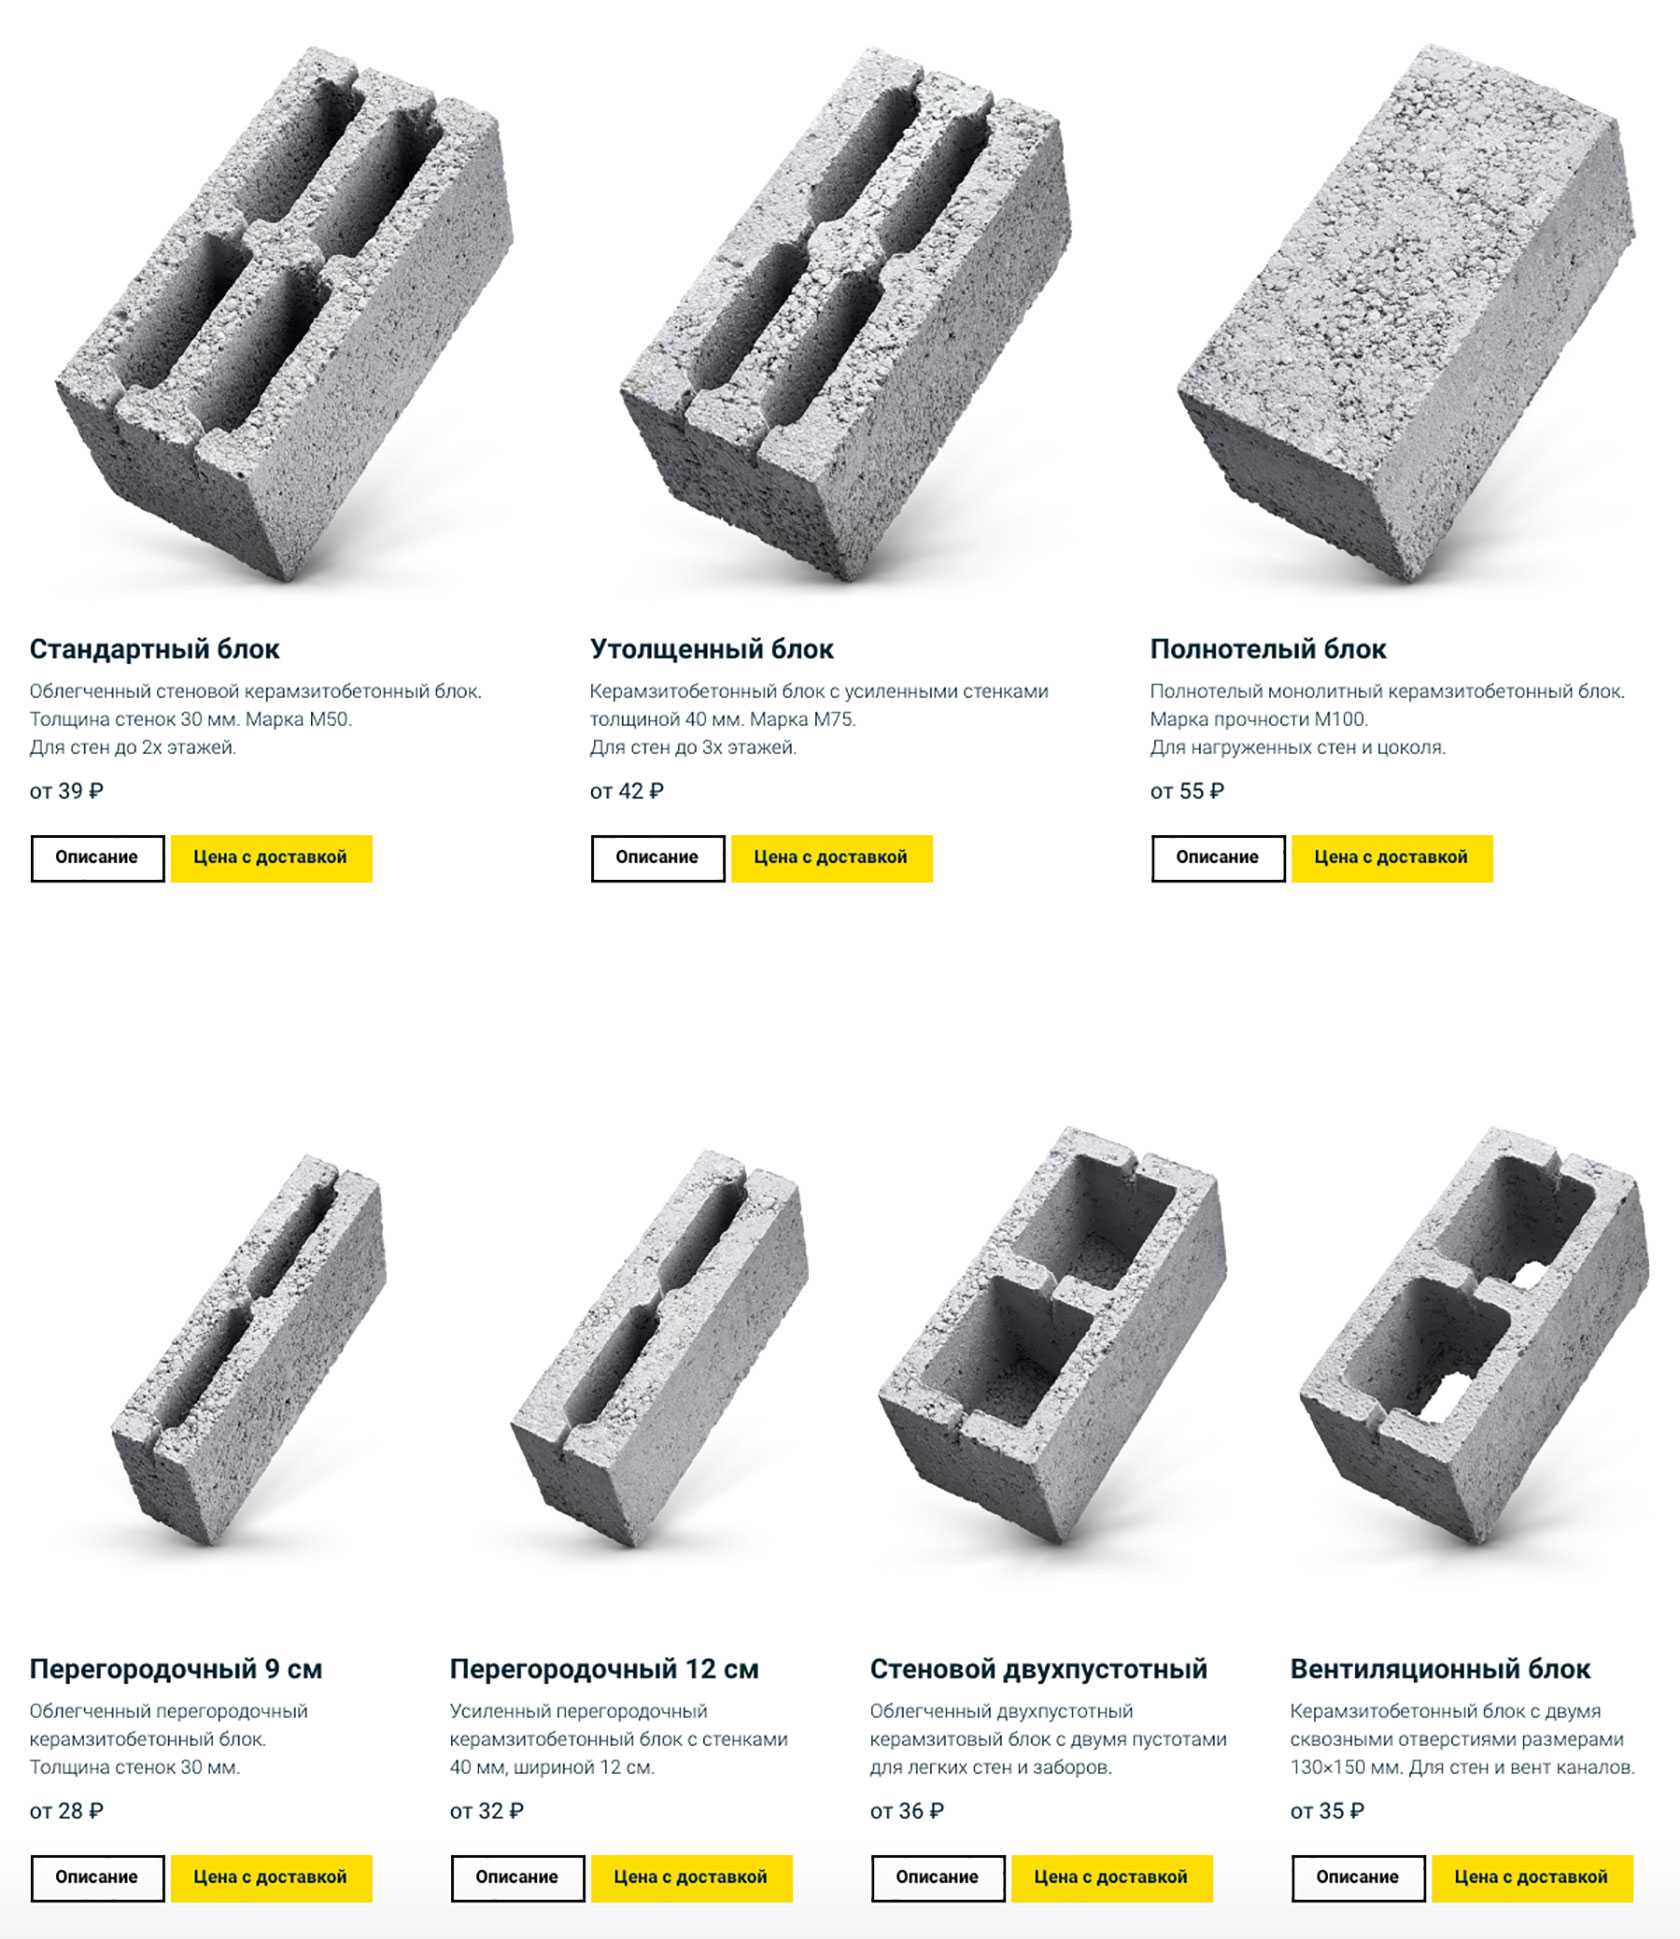 Шлакобетон и шлакощелочной бетон — сырьё и способы их производства